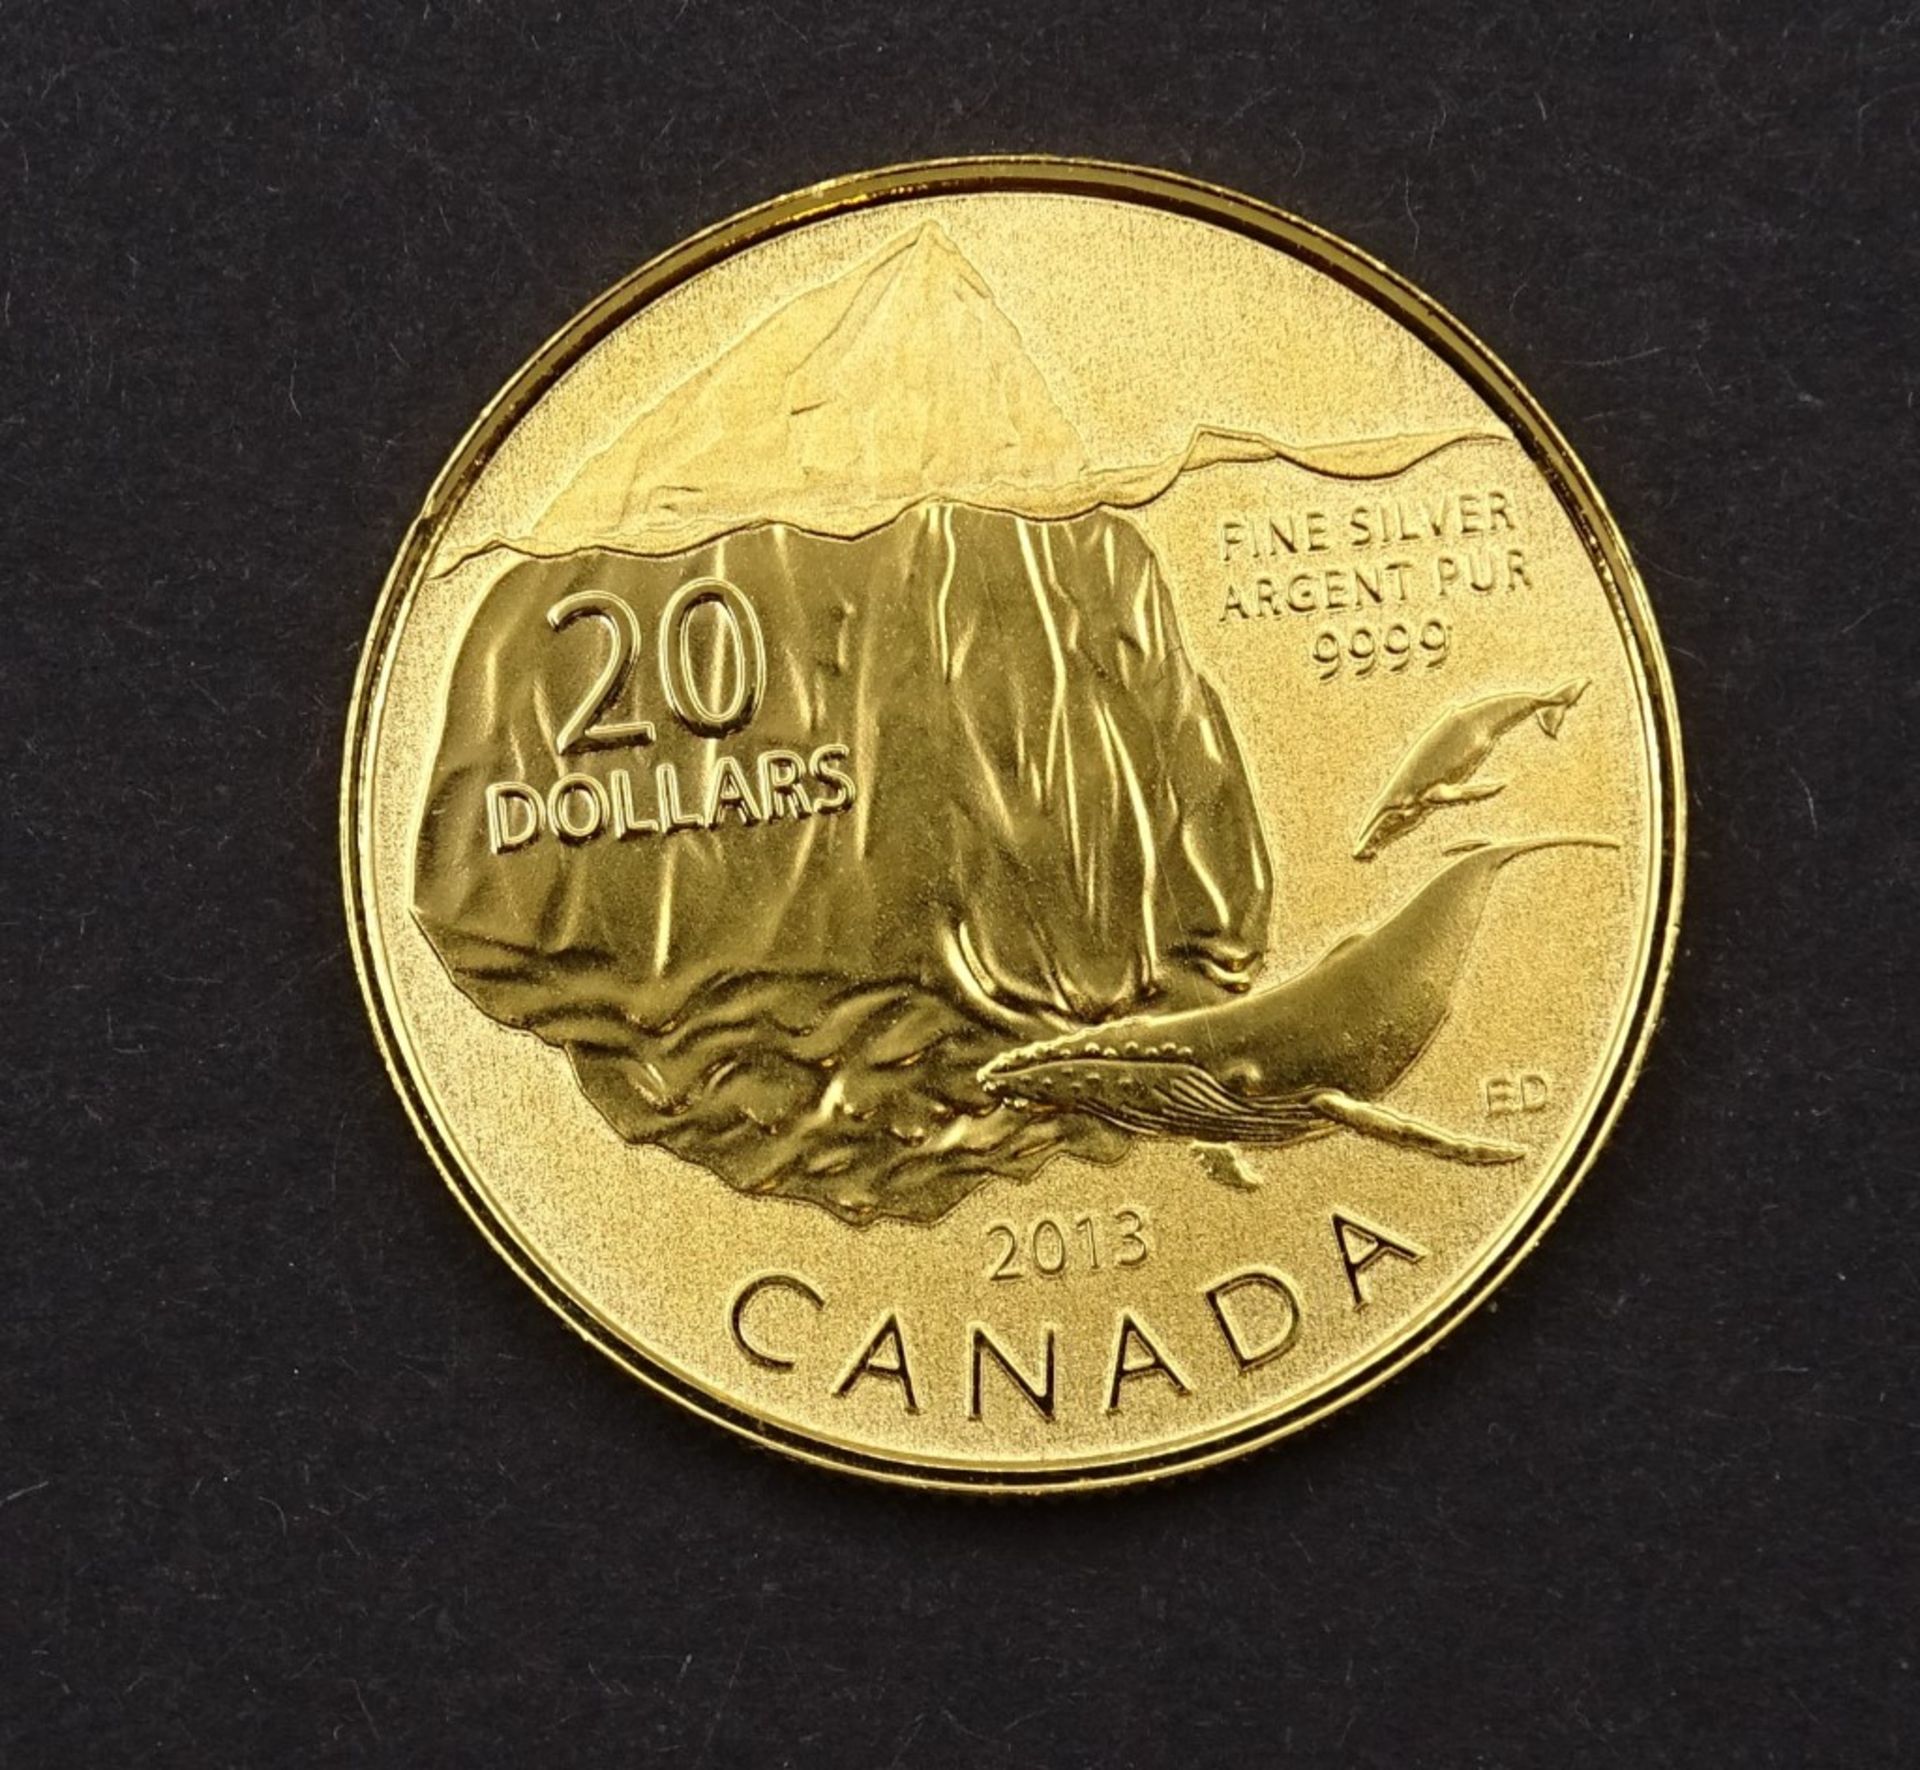 20 Dollars 2013 Canada Feinsilber 999 vergoldet